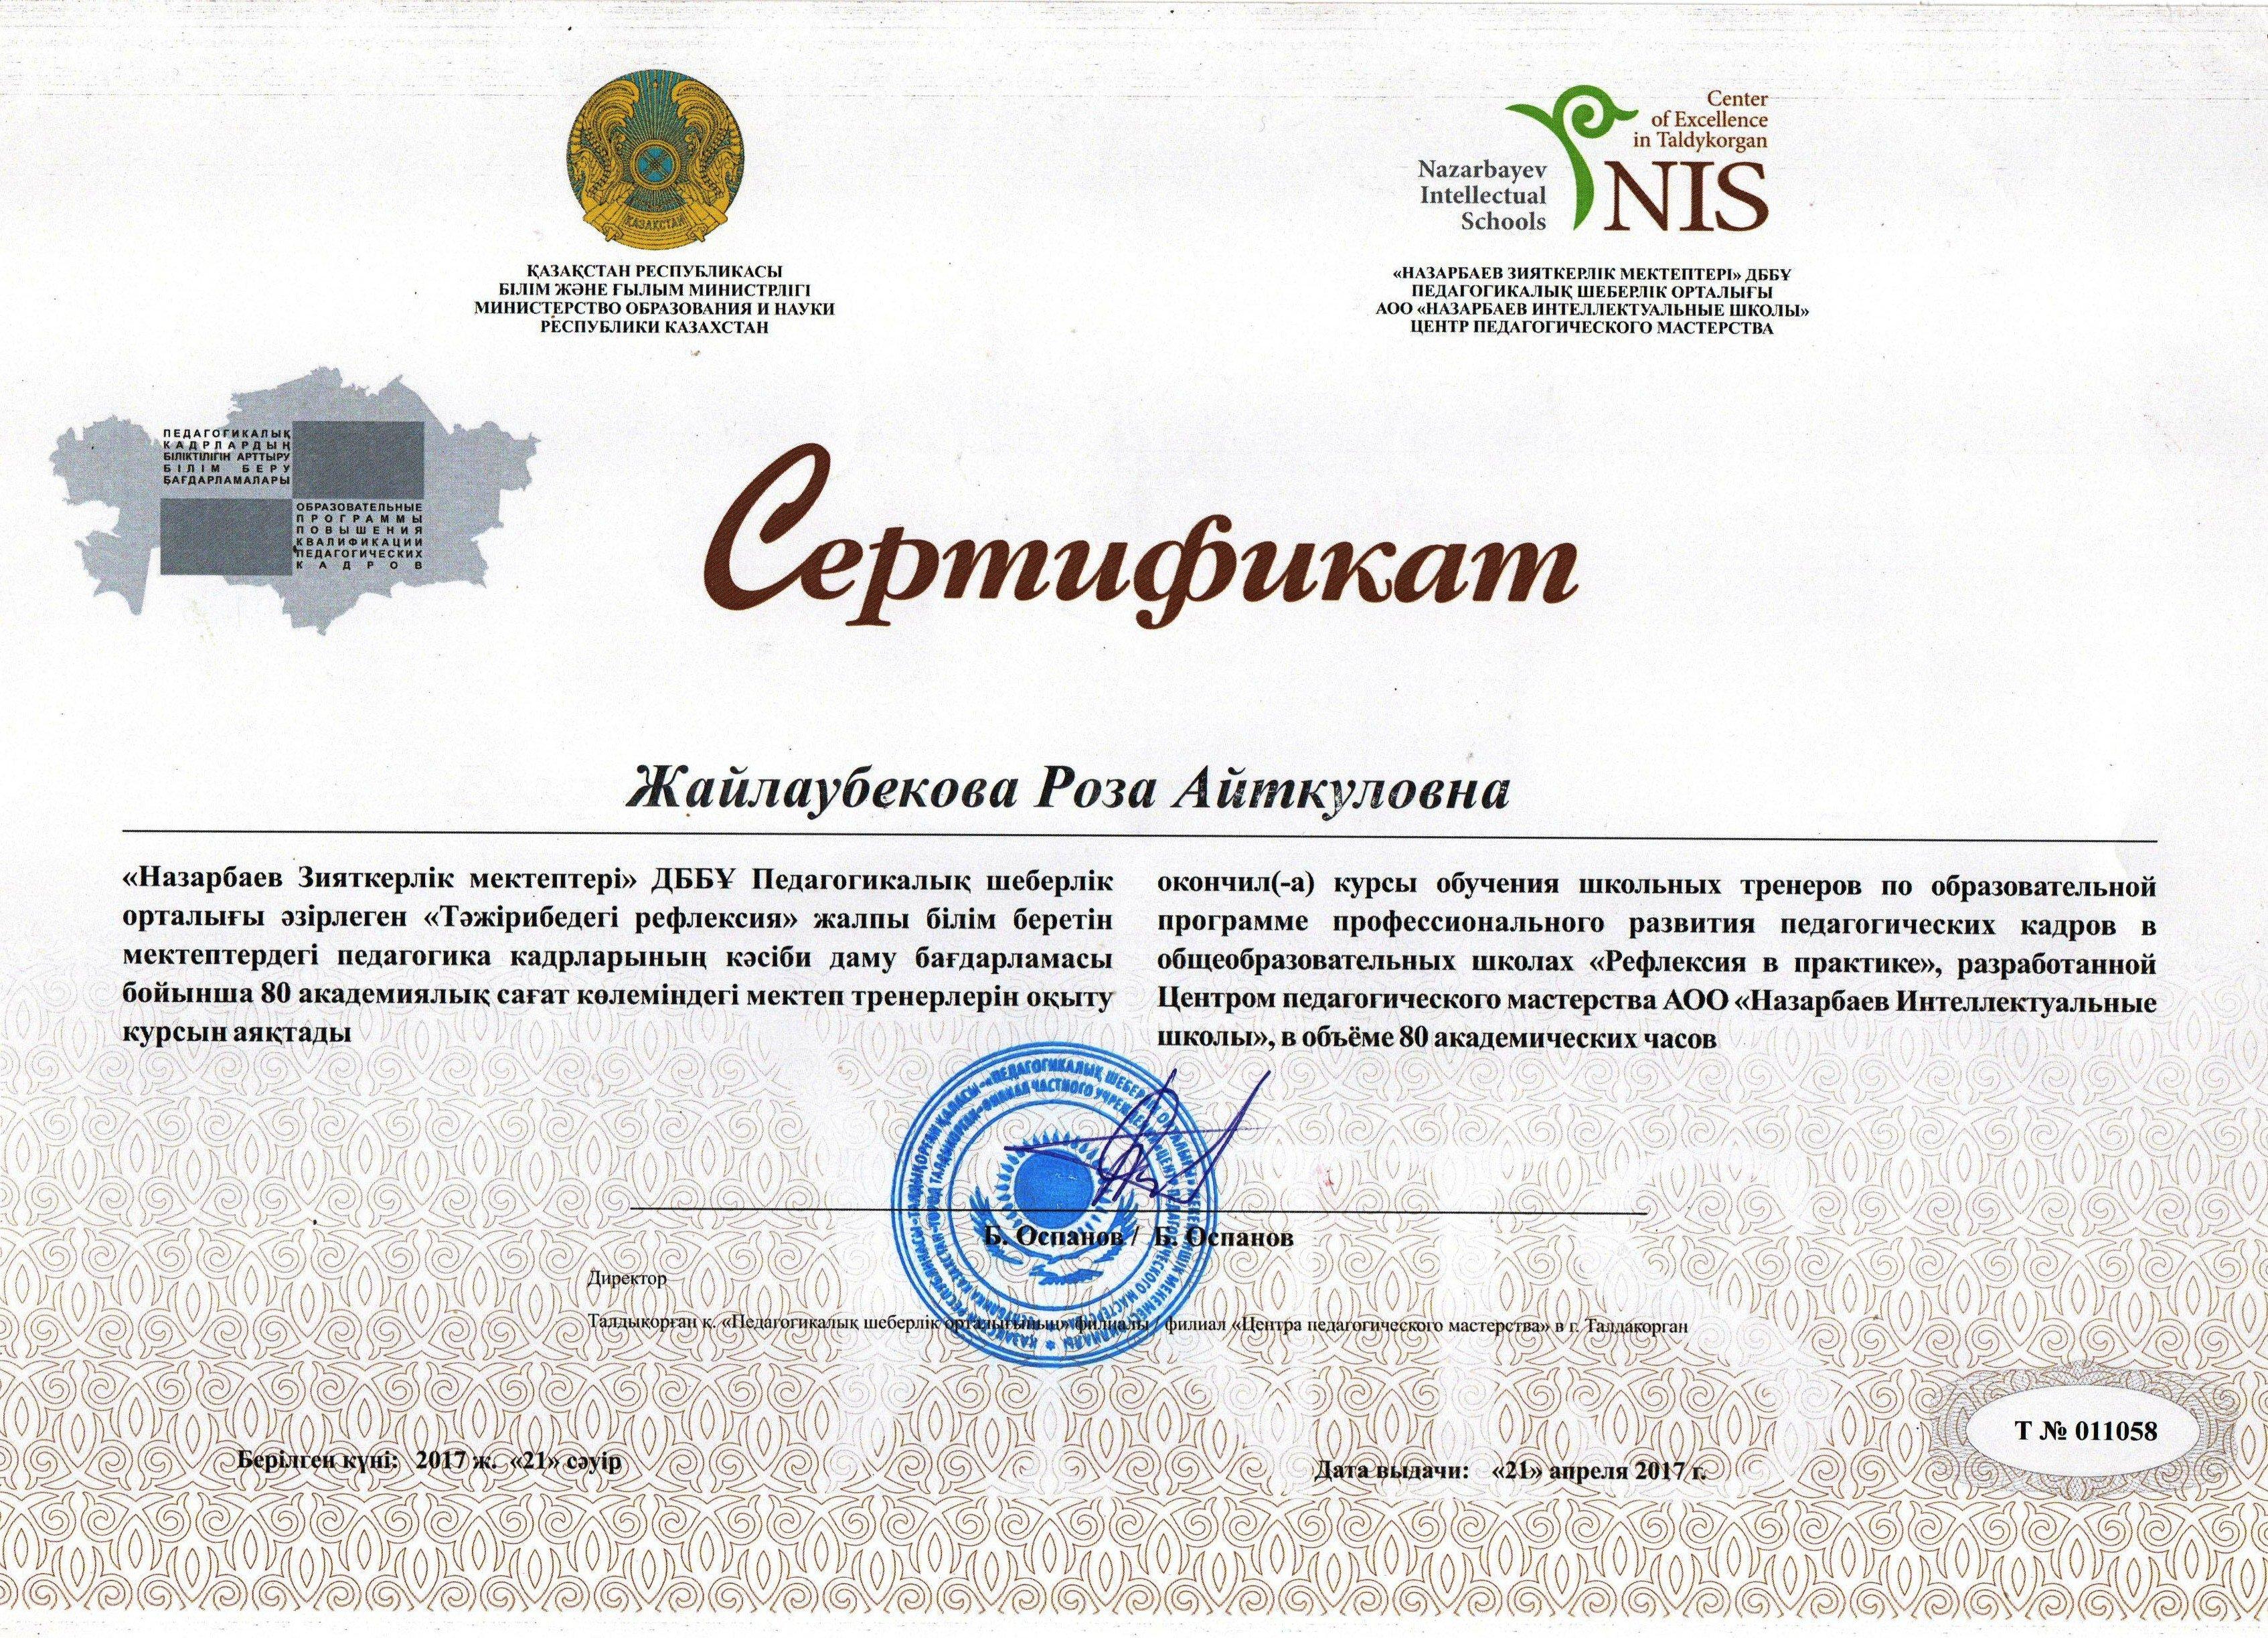 Жайлаубекова Р. А. Сертификат "Рефлексия в практике"